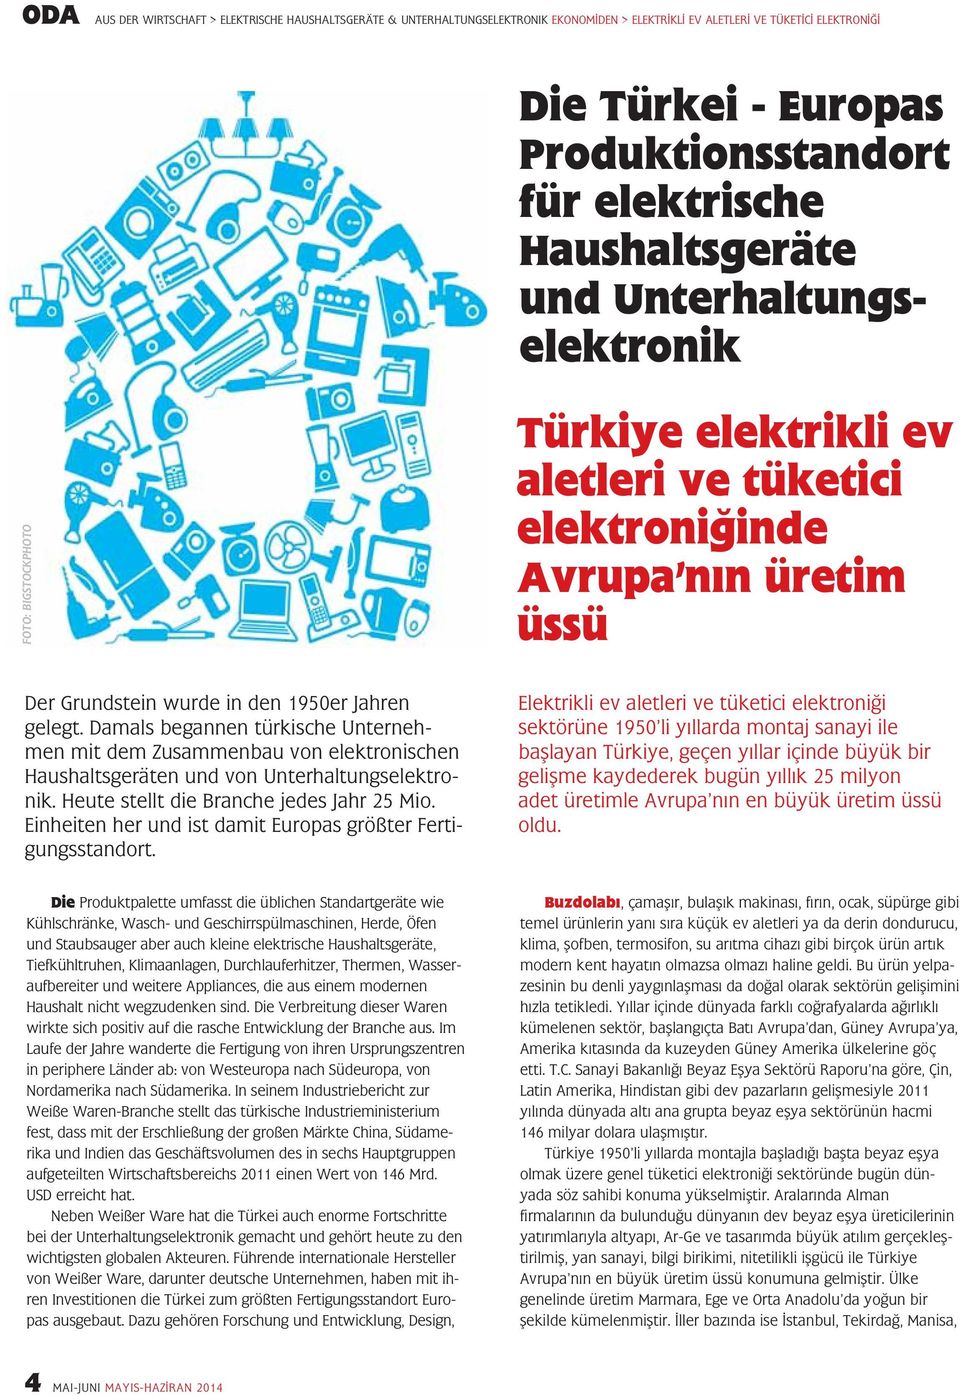 Damals begannen türkische Unternehmen mit dem Zusammenbau von elektronischen Haushaltsgeräten und von Unterhaltungselektronik. Heute stellt die Branche jedes Jahr 25 Mio.